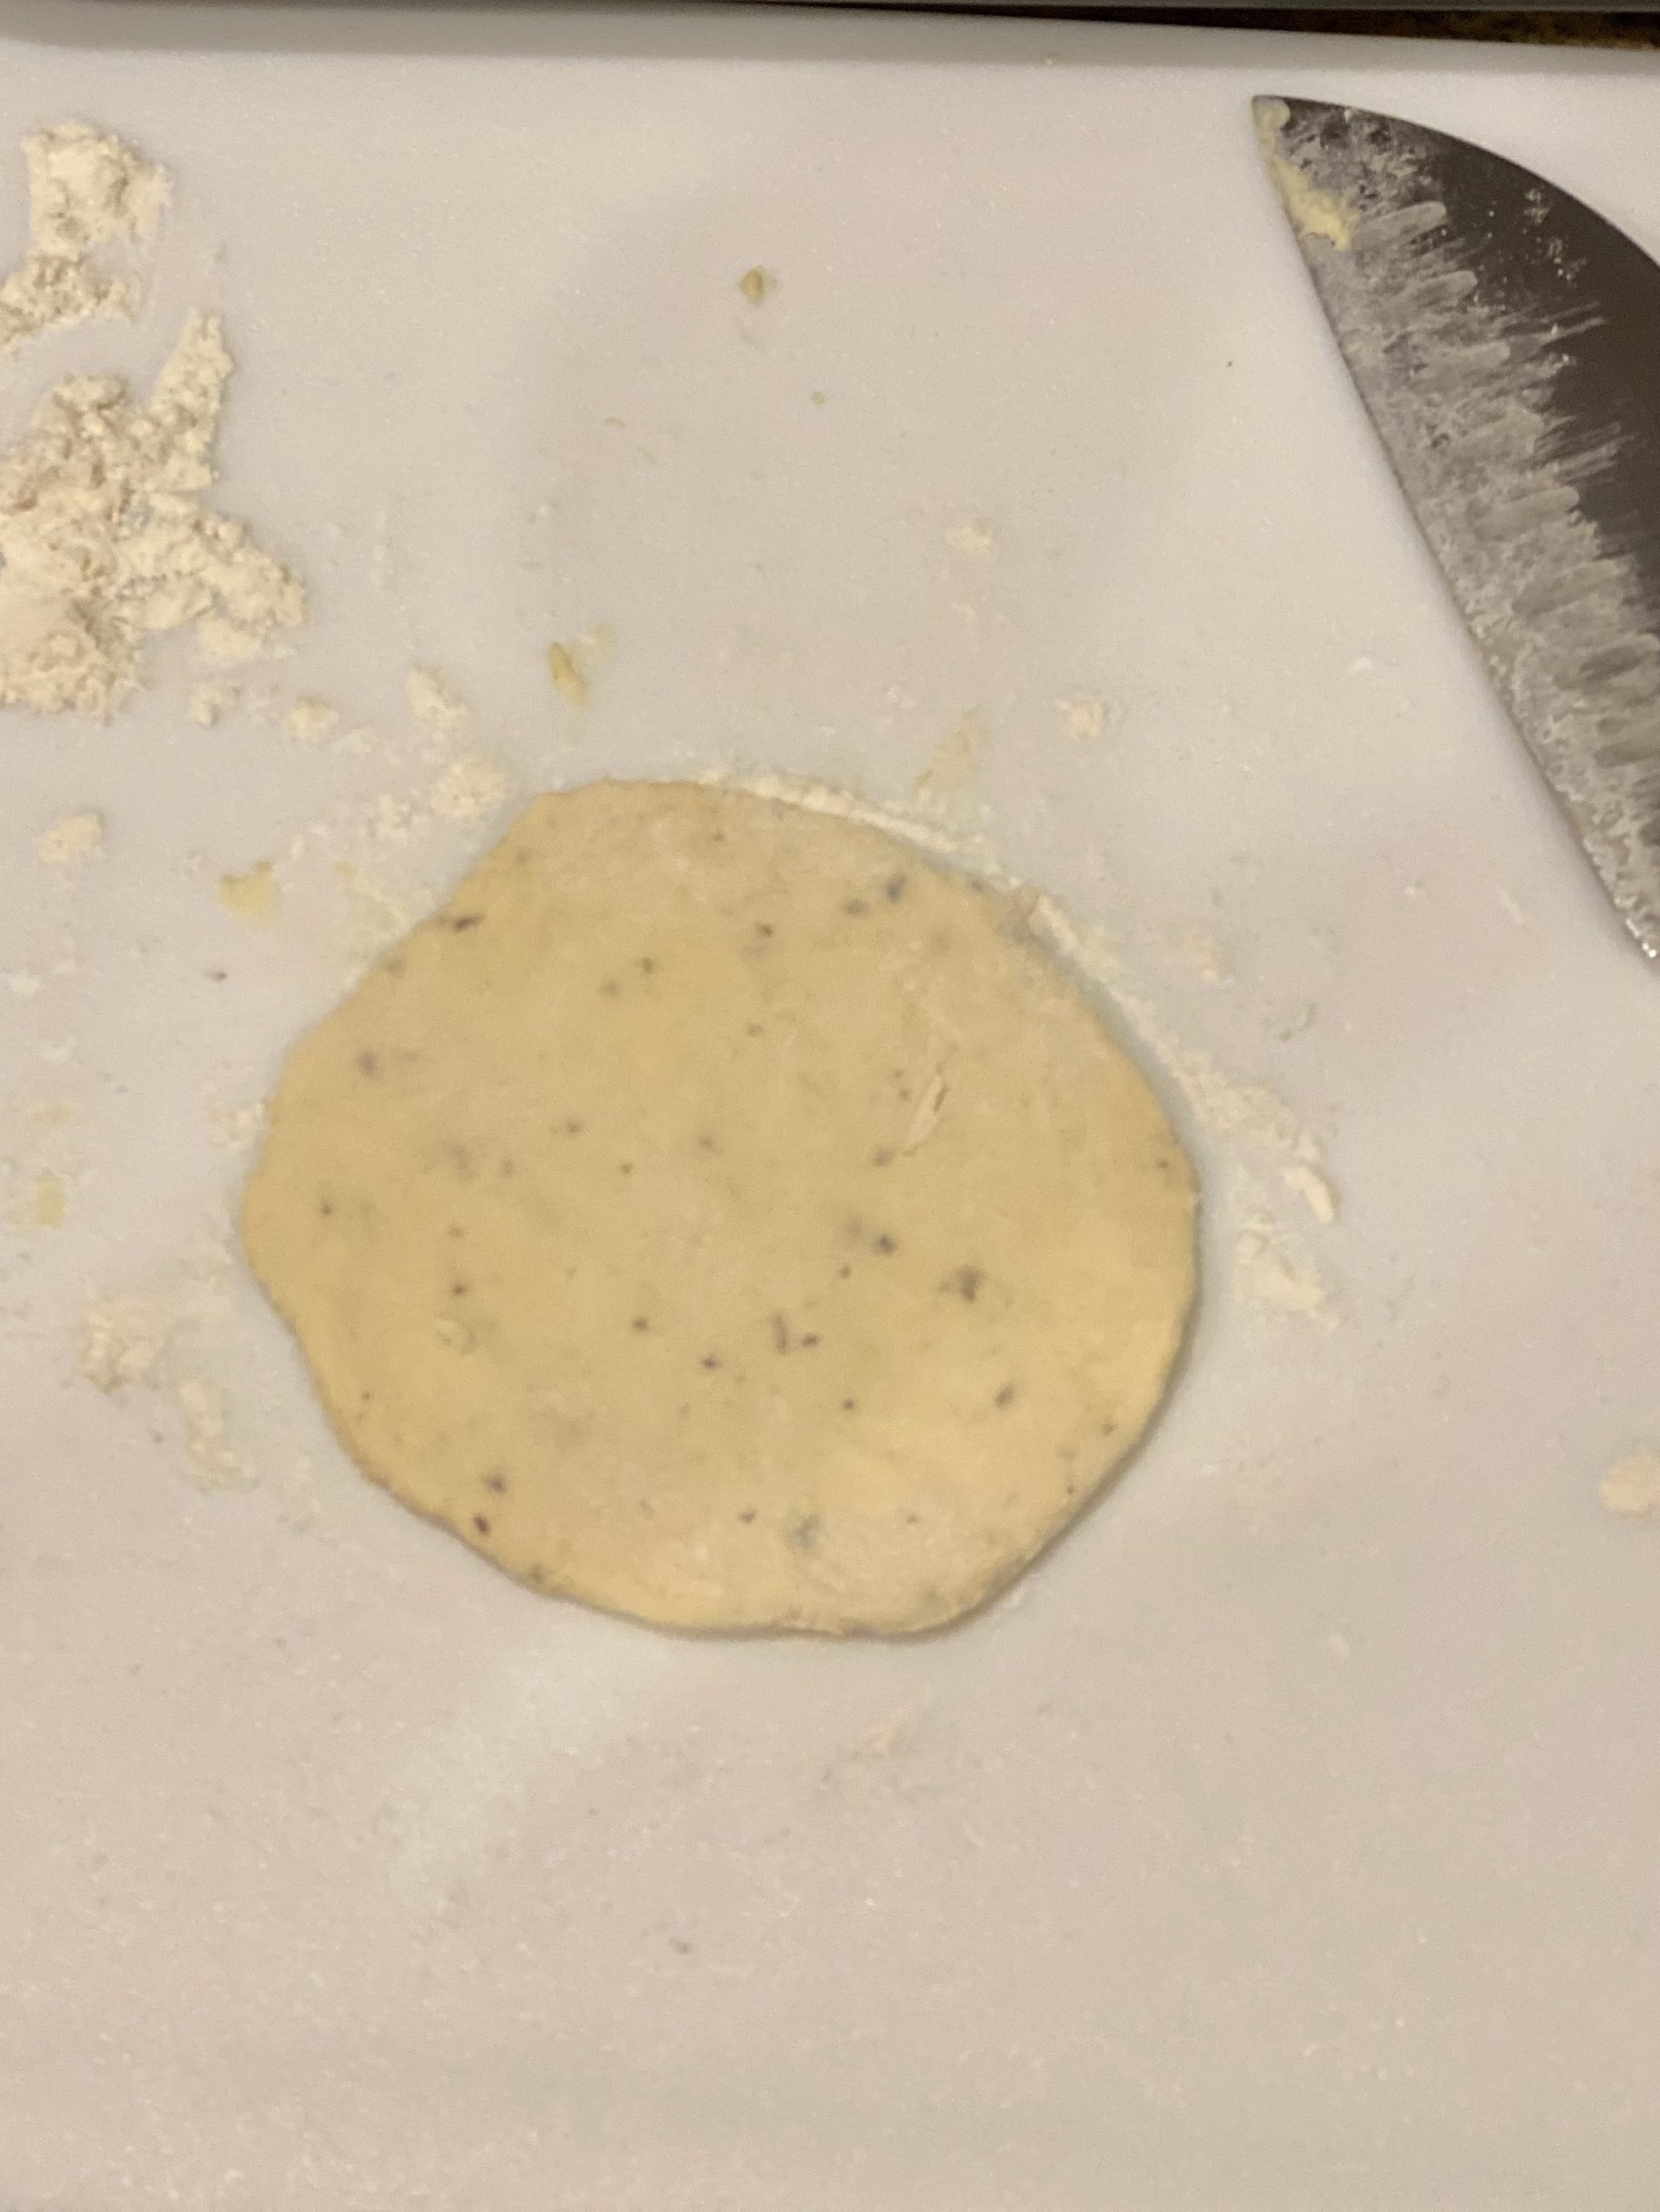 deep dish pizza dough